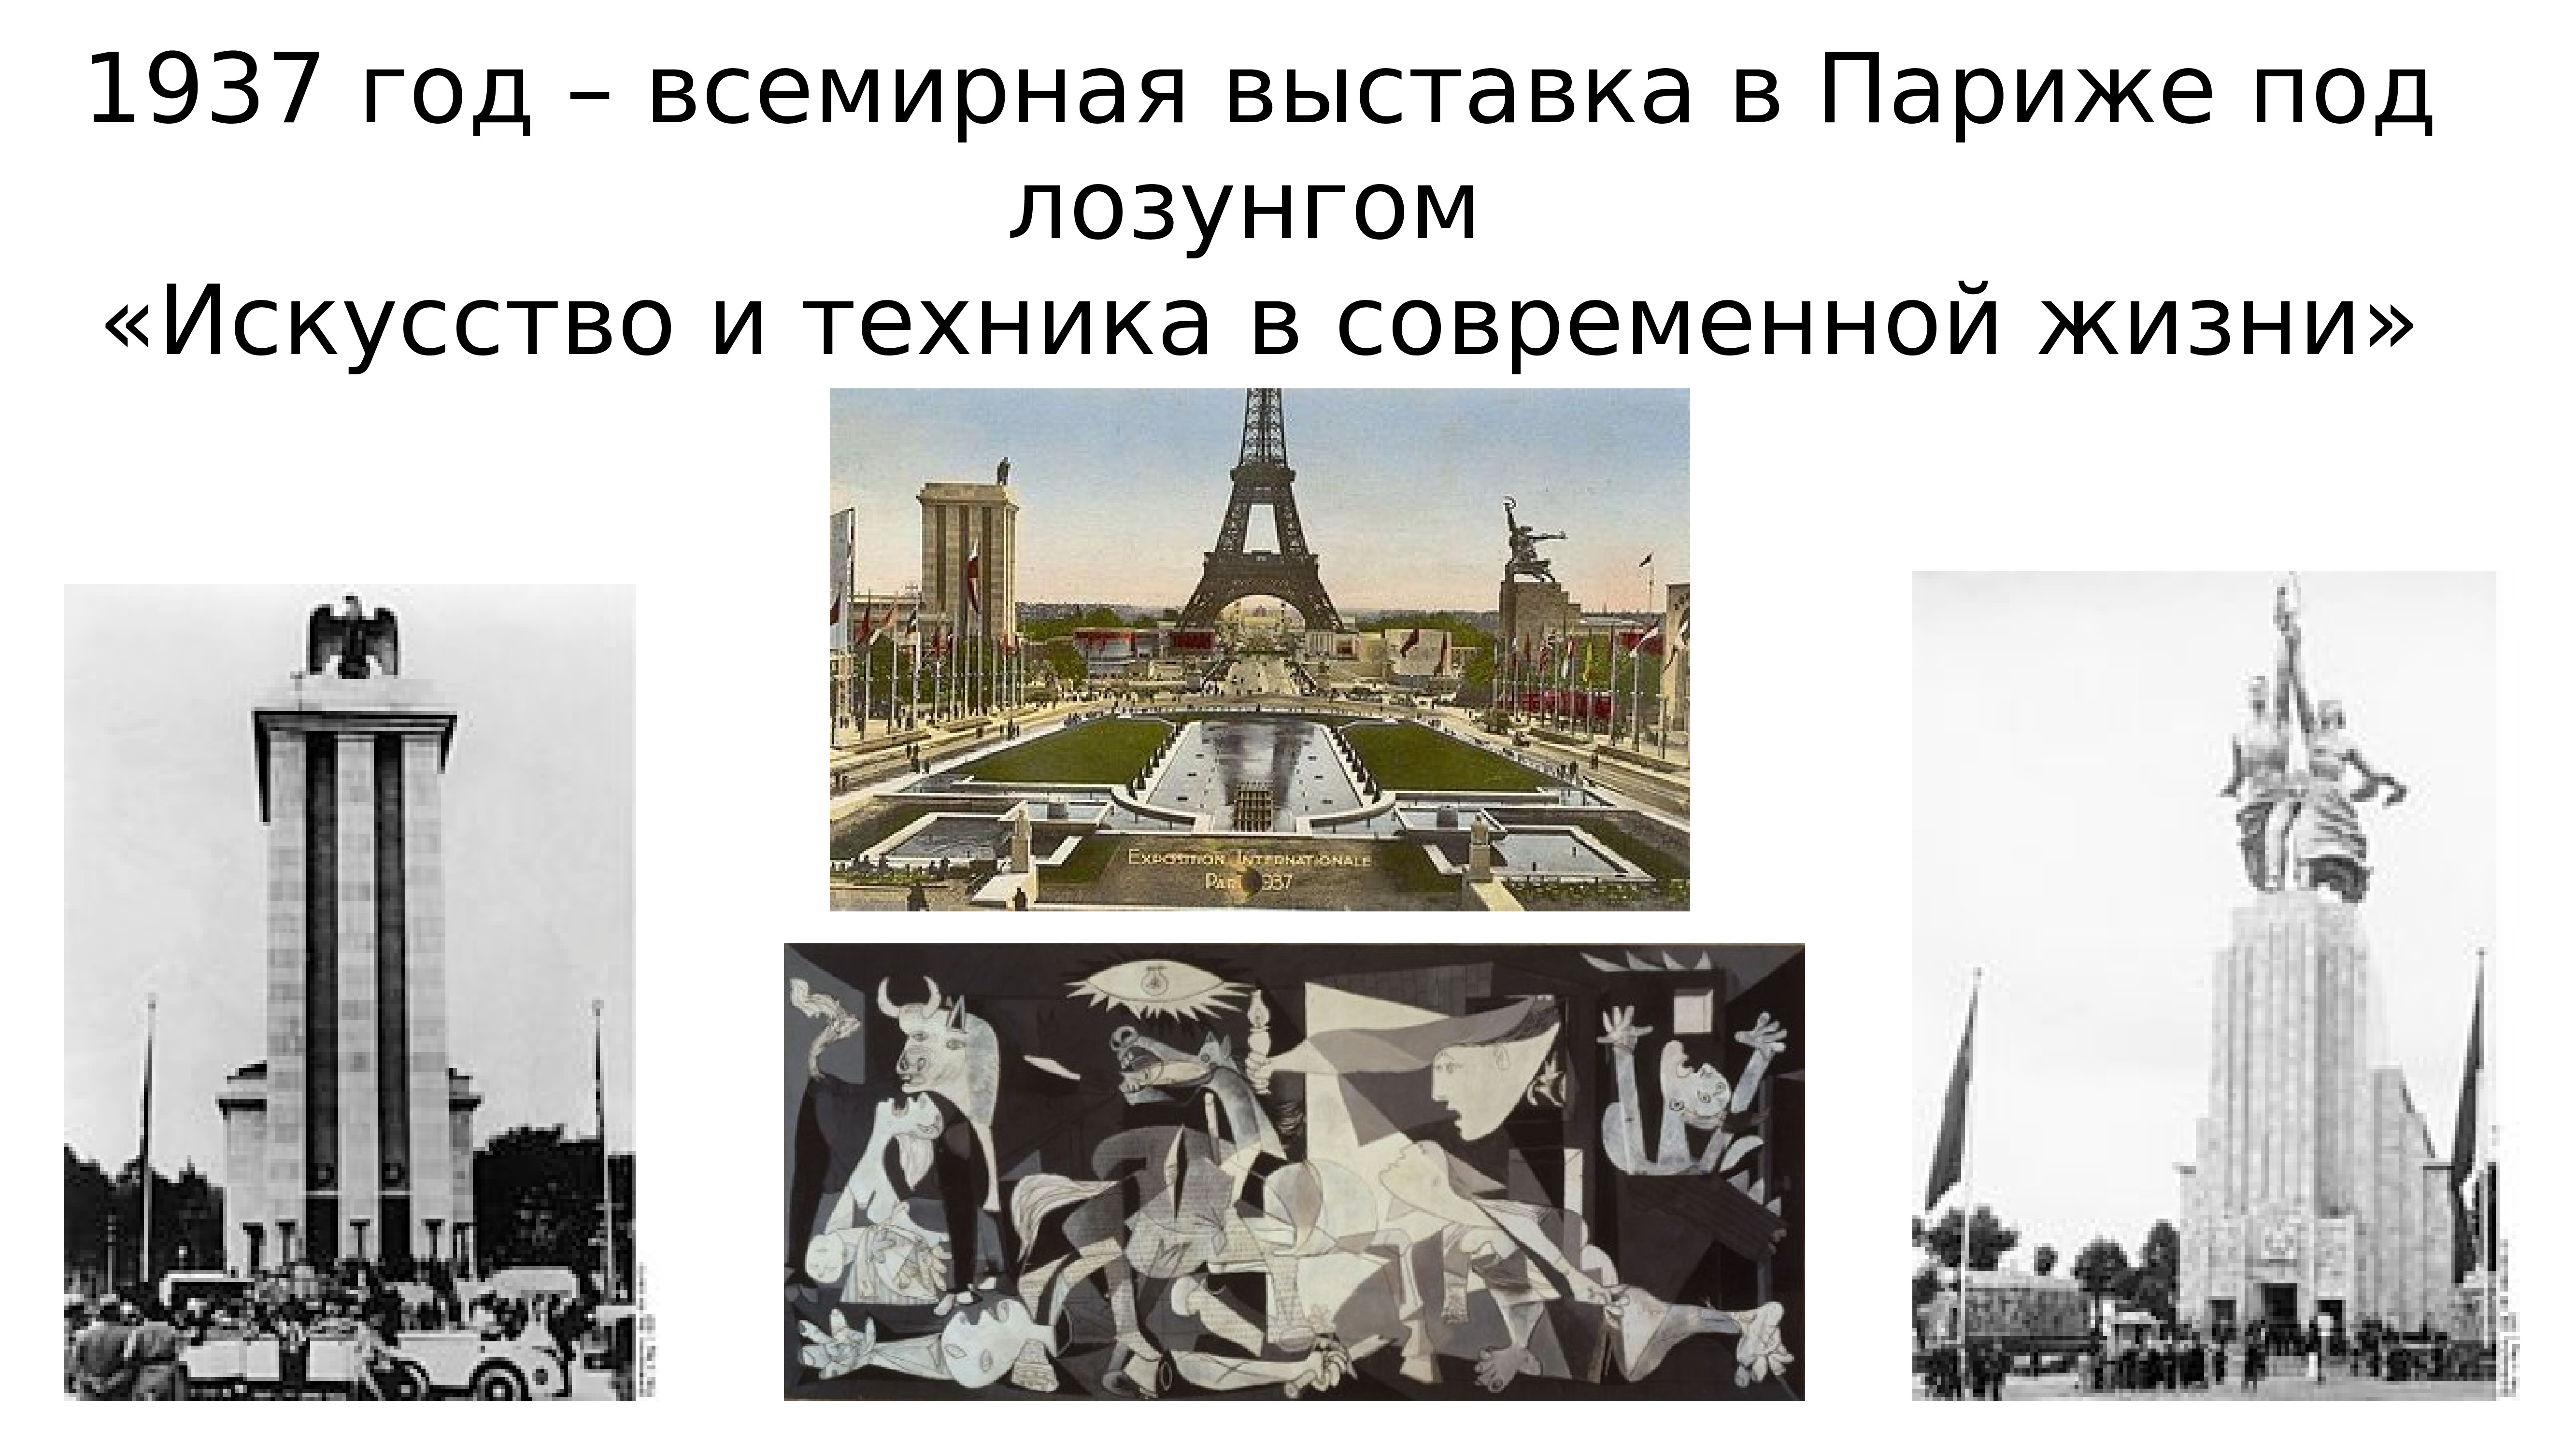 Ссср на всемирной выставке в париже. Всемирная выставка 1937. Всемирная Парижская выставка 1937. Выставка 1937 года в Париже. Всемирная выставка в Париже 1937.